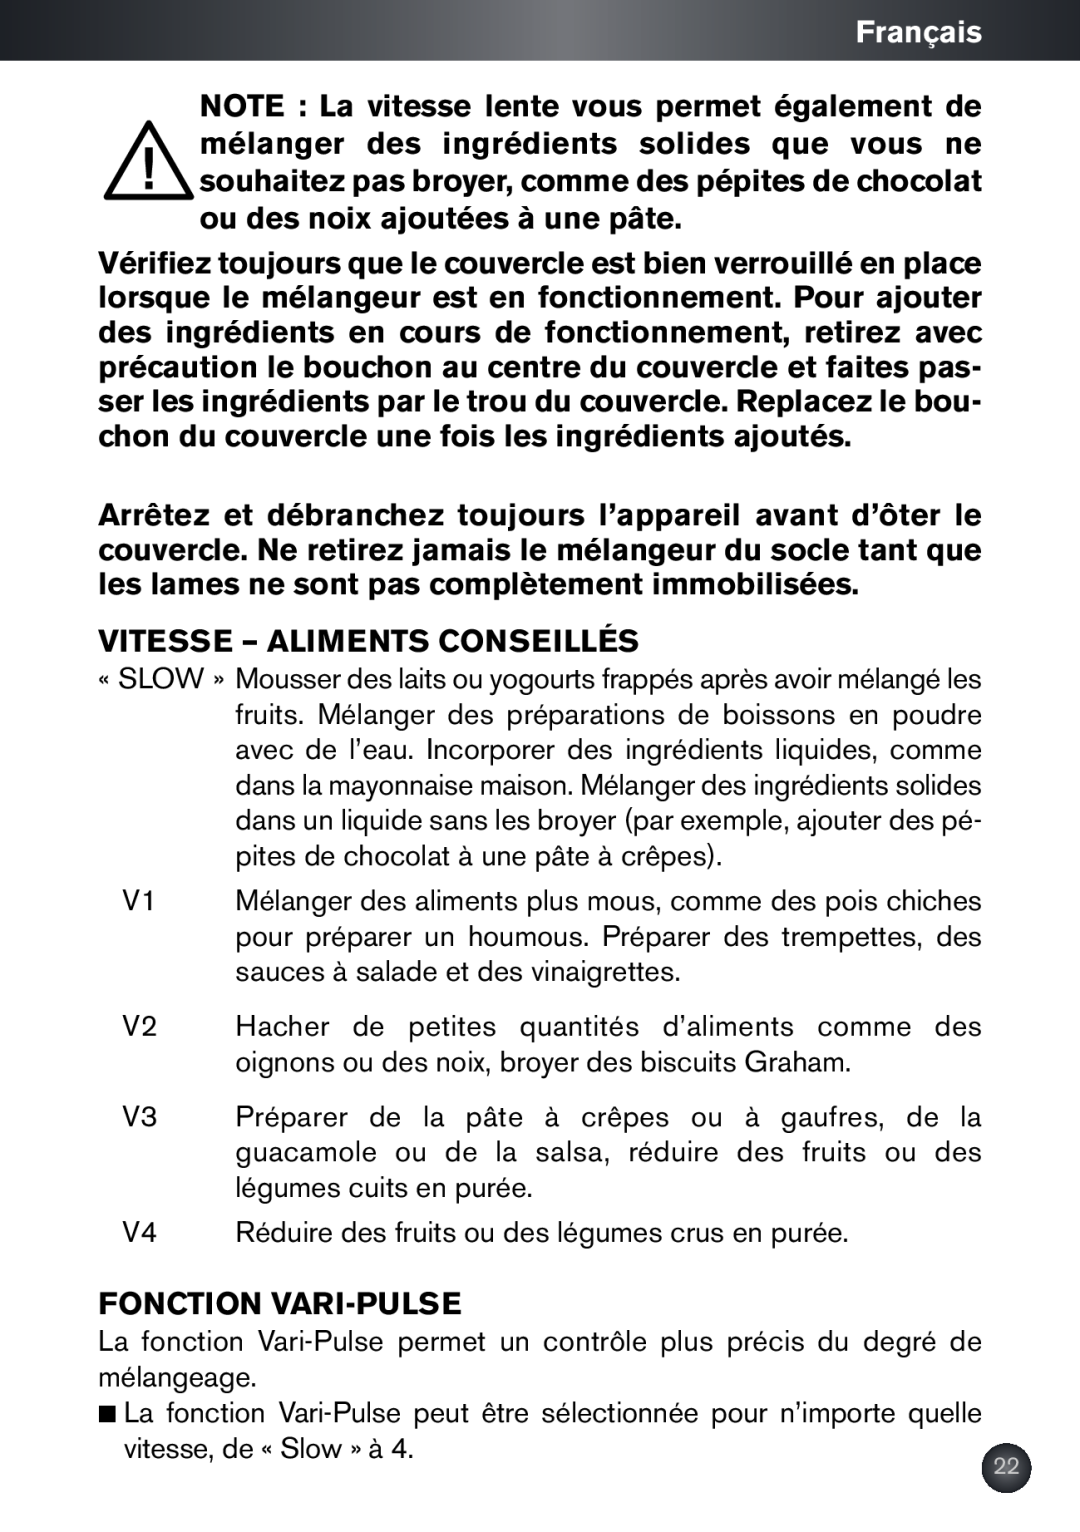 Krups KB790 manual Français, Vitesse - Aliments Conseillés, Fonction Vari-Pulse 